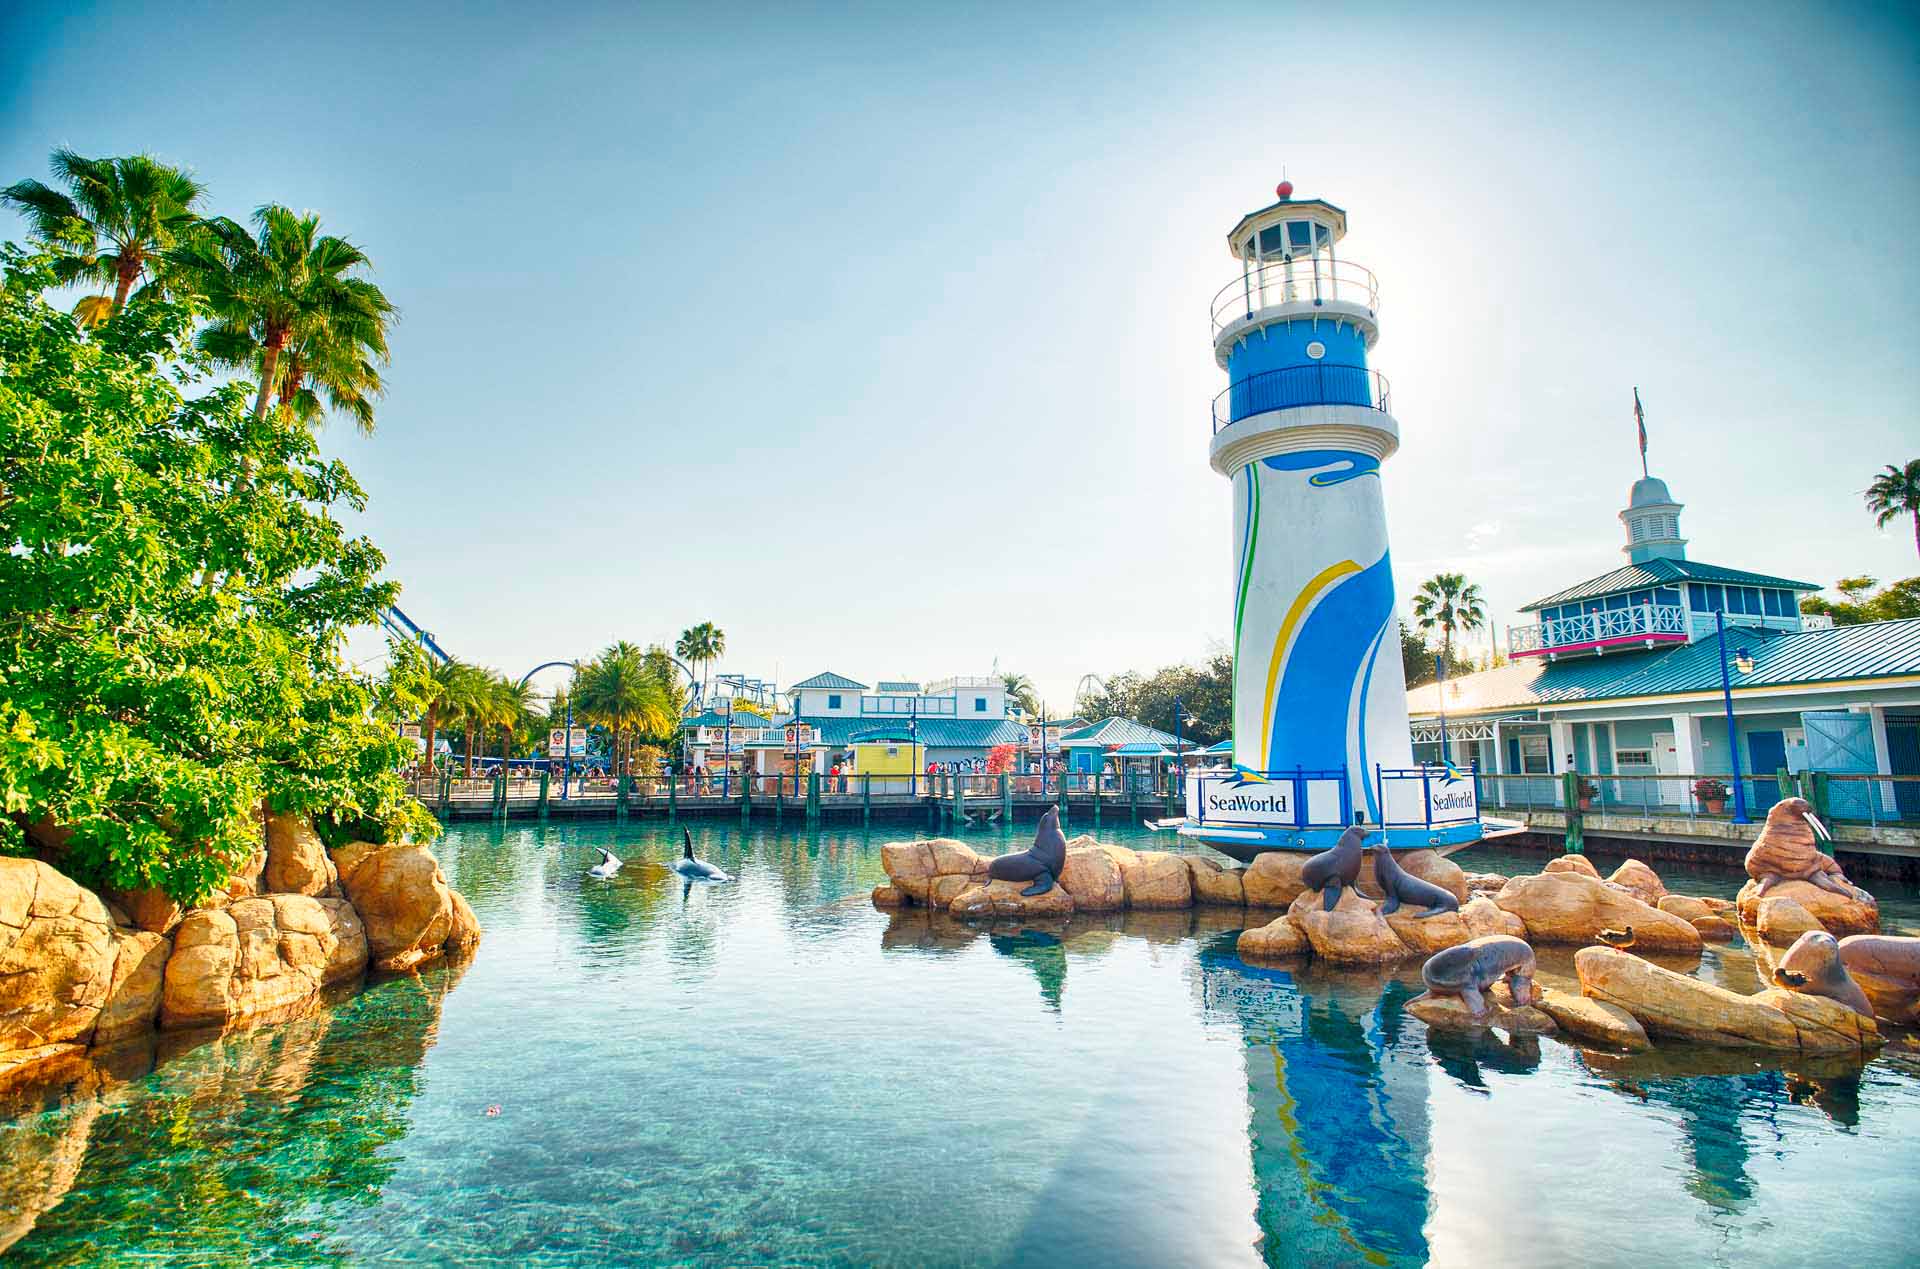 Faro de SeaWorld Orlando rodeado por una laguna